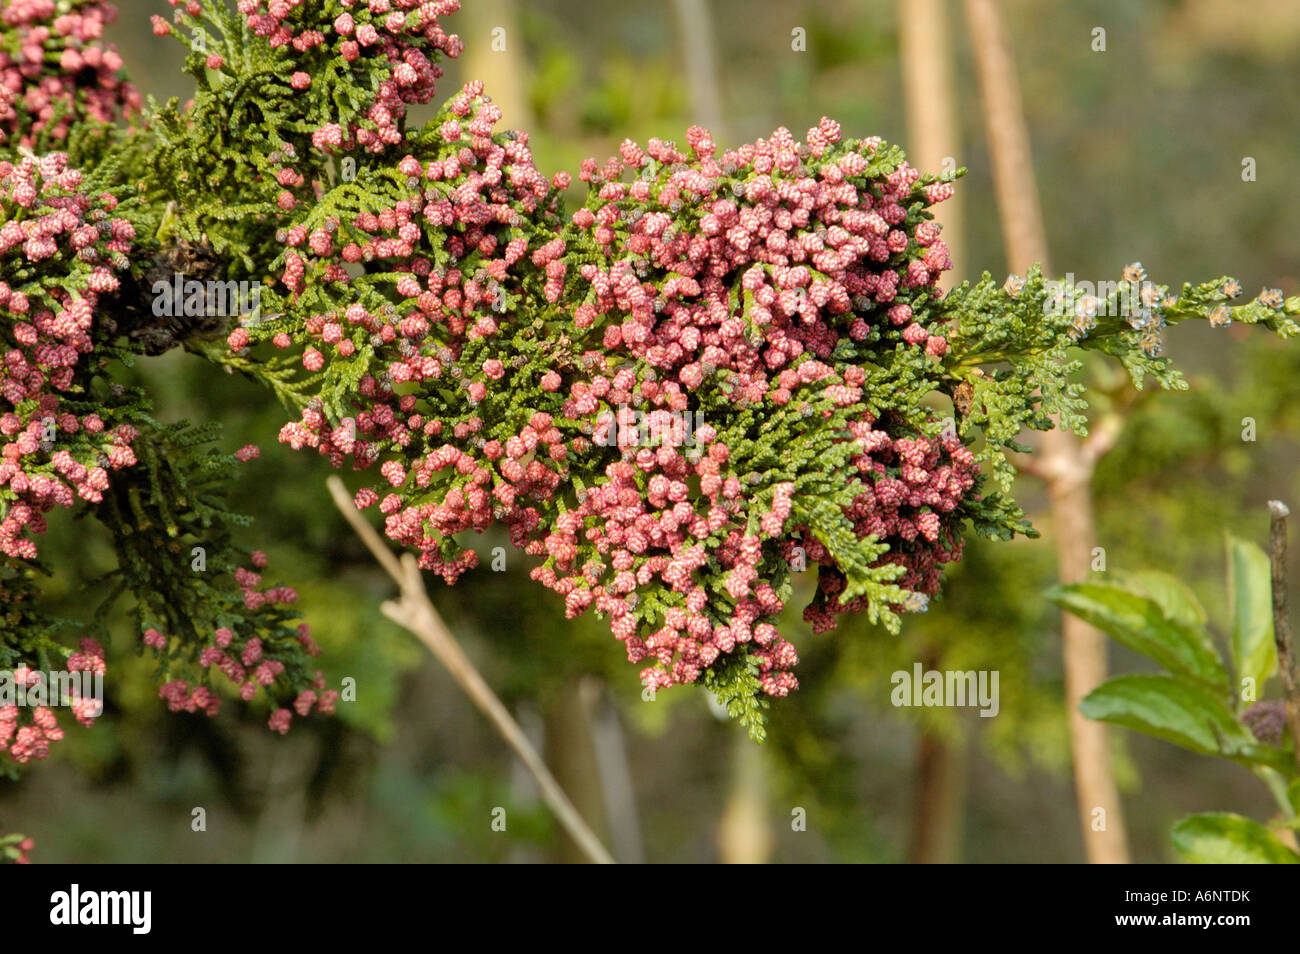 Lawson, Cypress chamaecyparis lawsoniana 'Wisselii' Photo Stock - Alamy